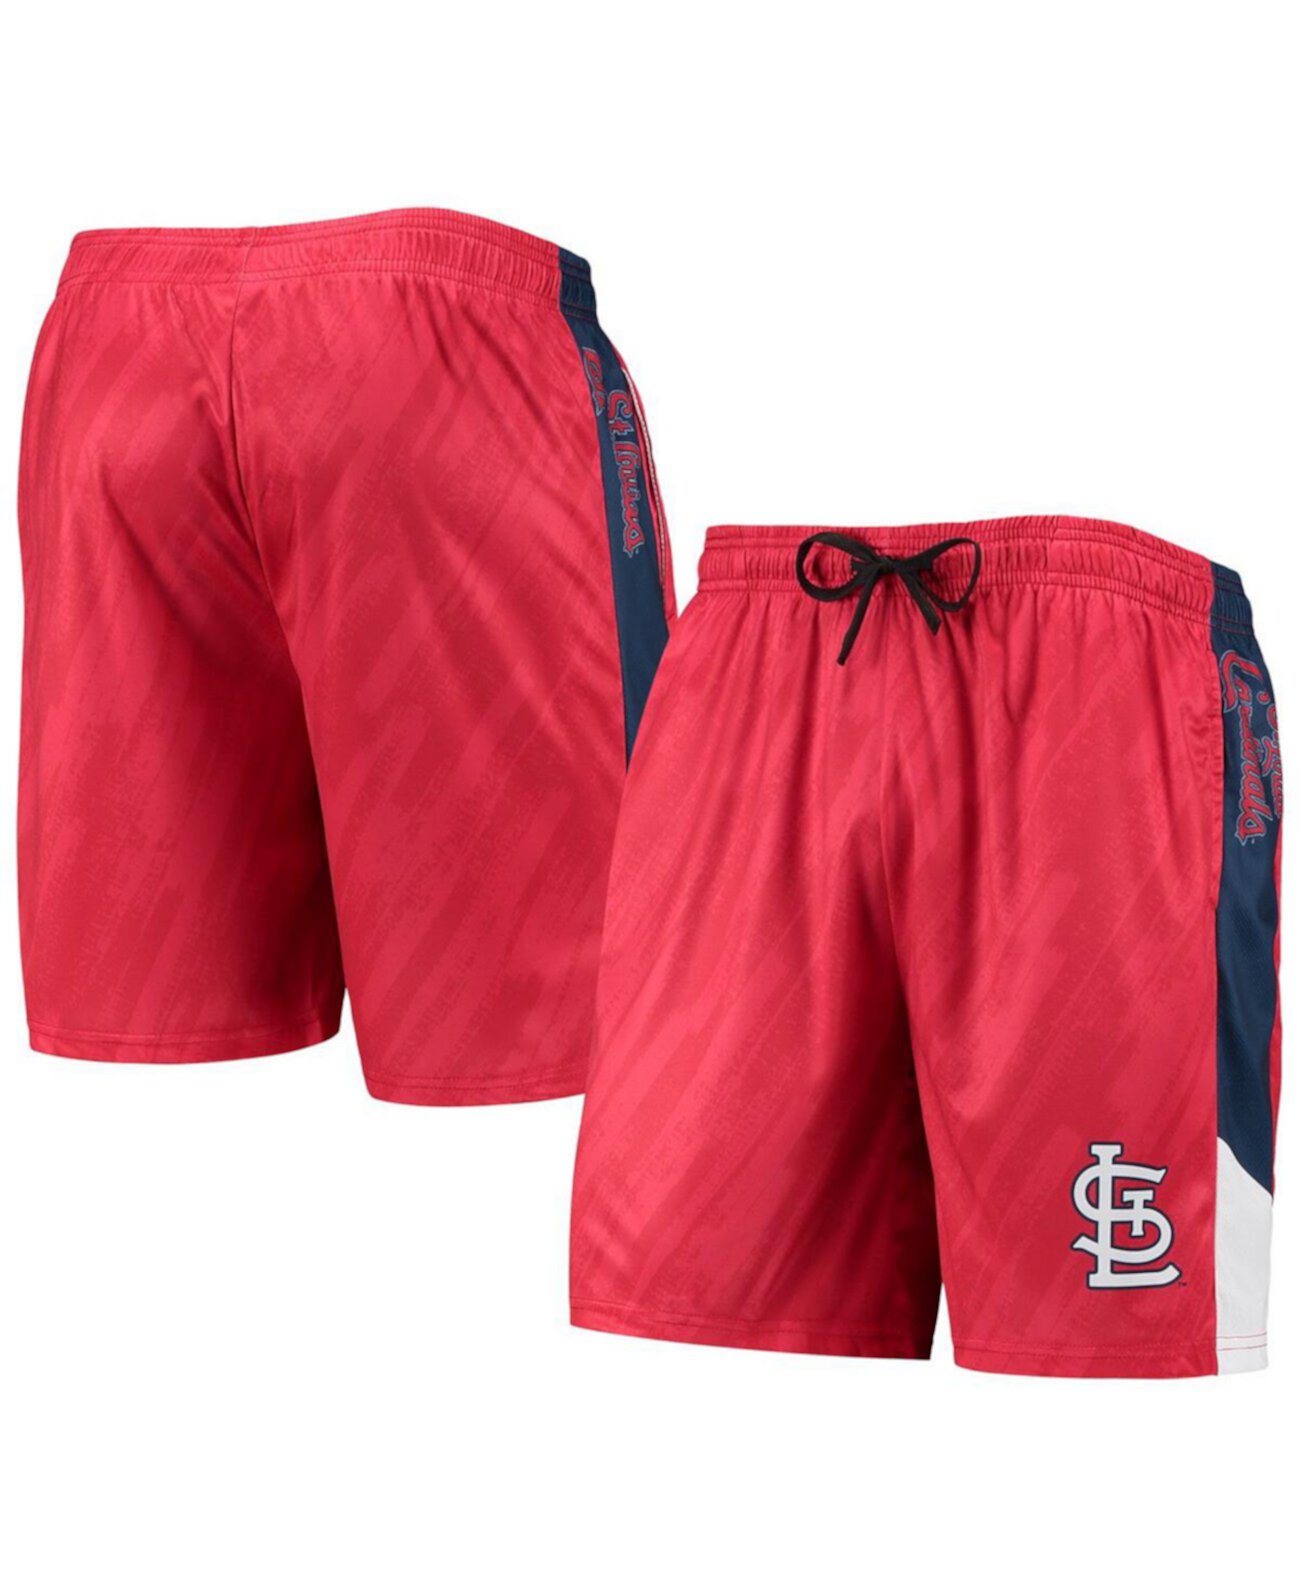 Мужские красные статические шорты St. Louis Cardinals FOCO